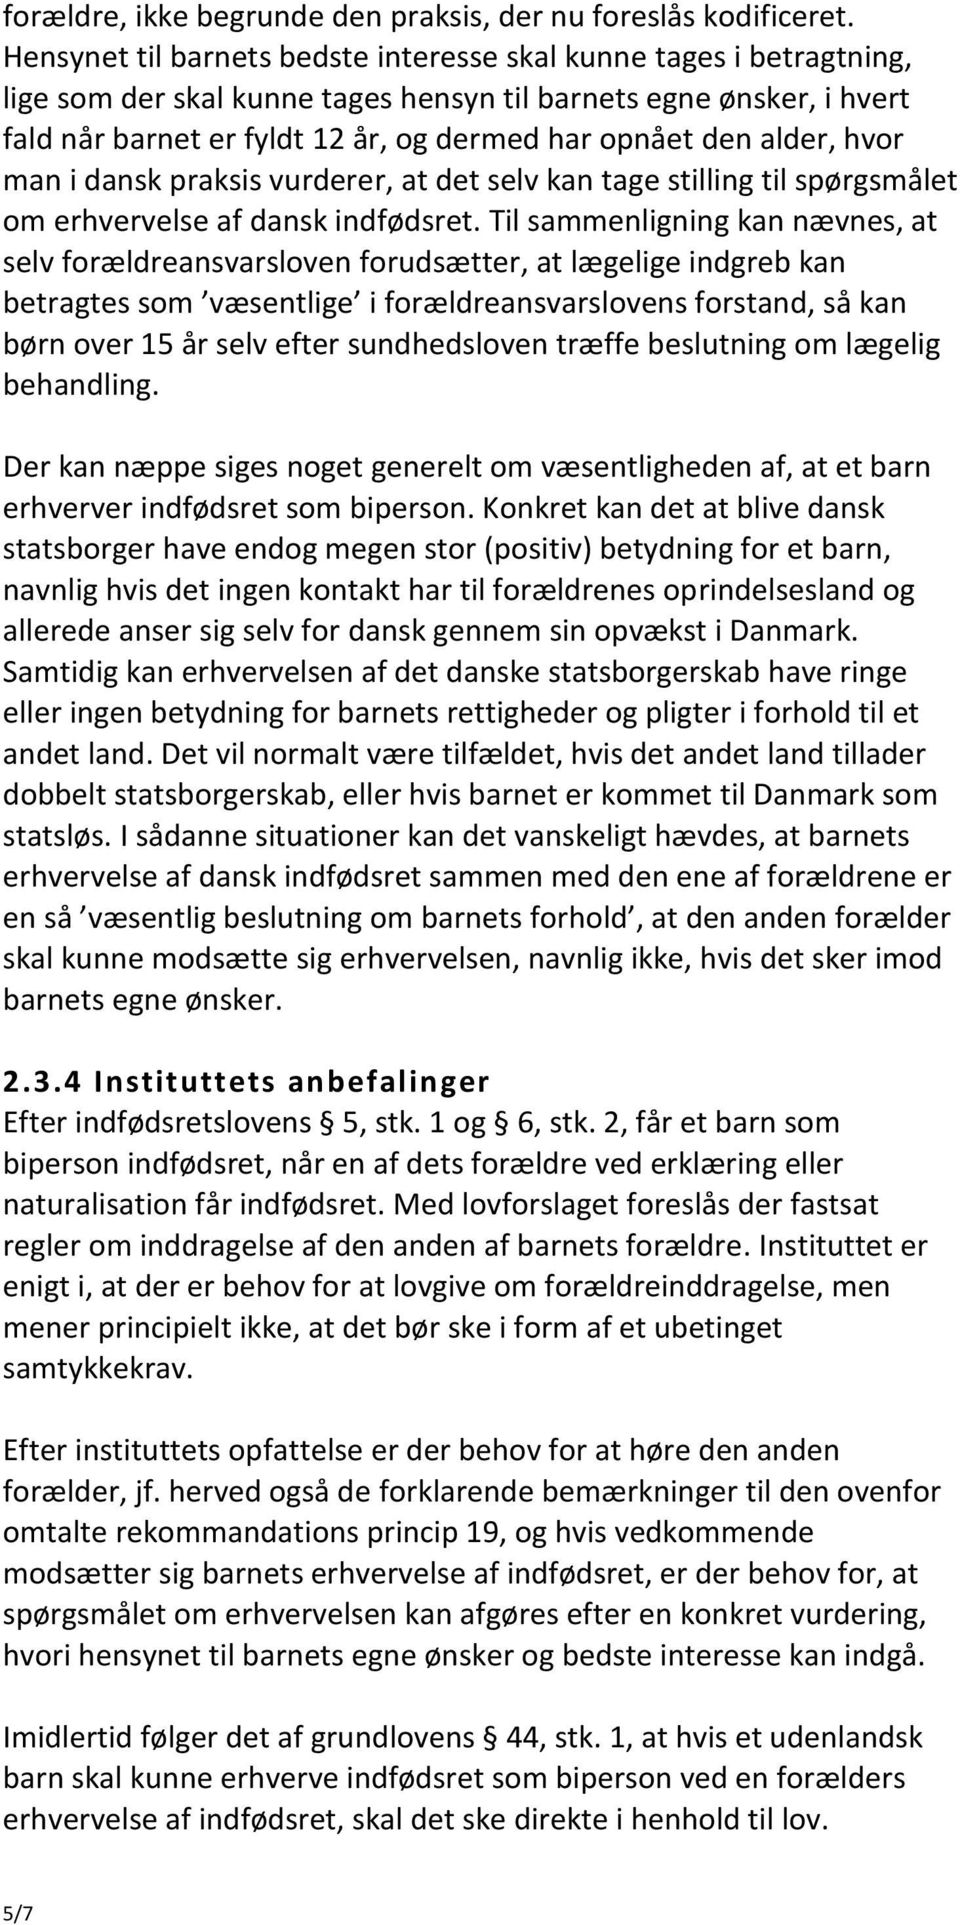 alder, hvor man i dansk praksis vurderer, at det selv kan tage stilling til spørgsmålet om erhvervelse af dansk indfødsret.